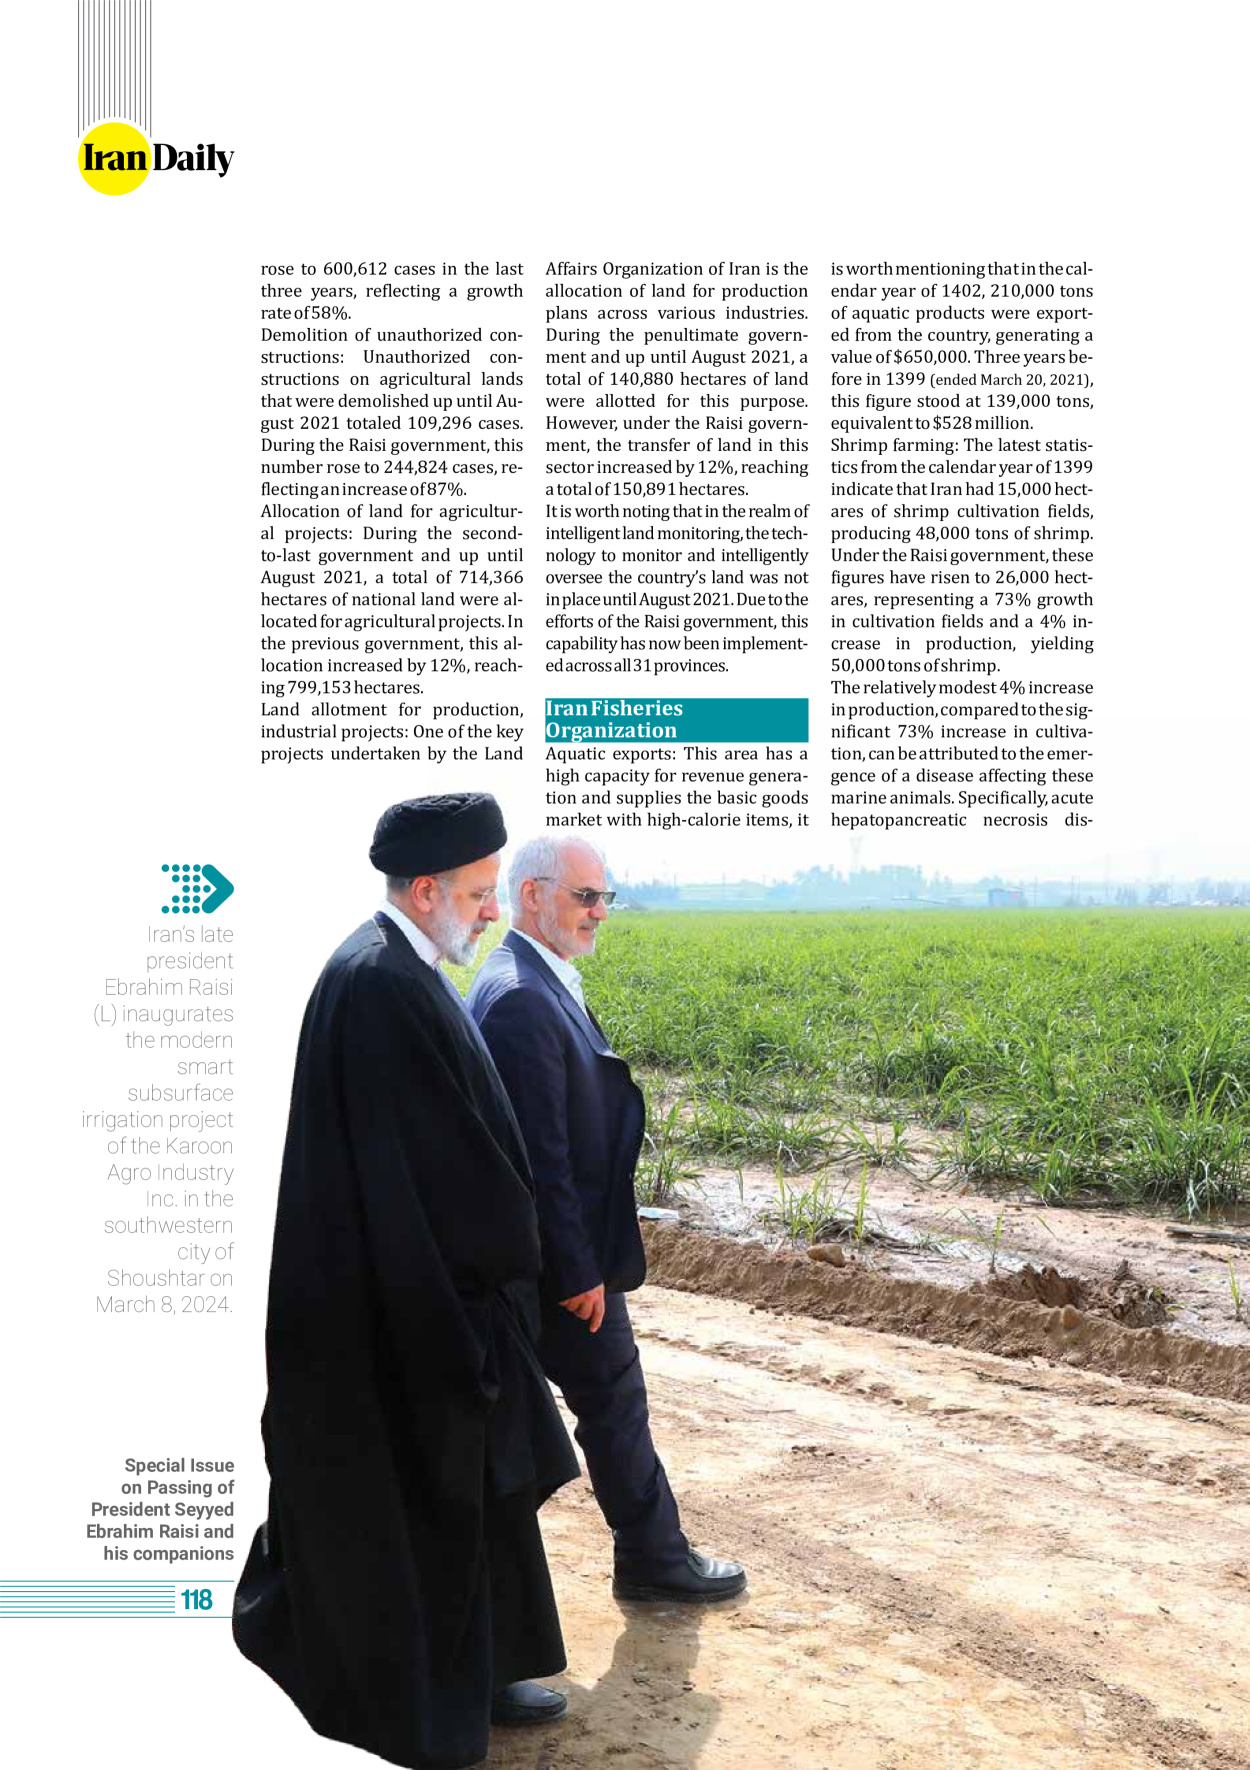 روزنامه ایران - ویژه نامه وِزه نامه چهلم شهید رییسی( انگلیسی) - ۱۷ تیر ۱۴۰۳ - صفحه ۱۱۸